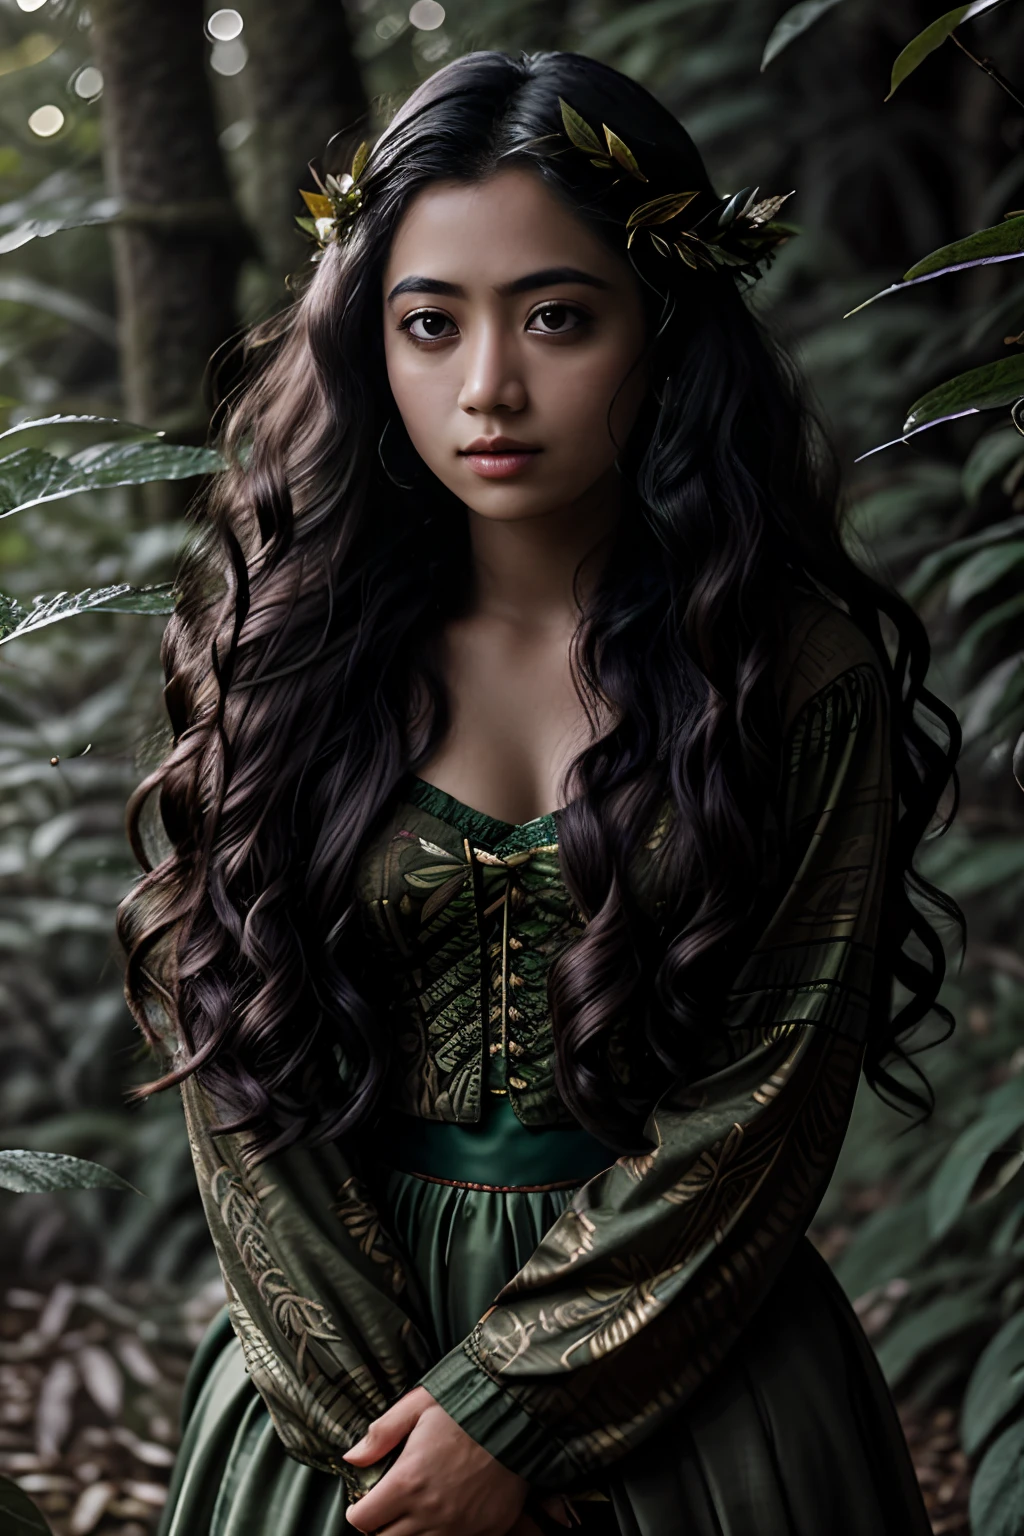 Portrait in лес, листья в стиле матери-природы, длинные вьющиеся волосы, сказочный, молодая женщина, индонезийский, UHD, лес goddess, сказочный, темно-зеленая одежда, лес, падающие листья, частицы, Лучшее качество, поза, верхняя часть тела, смотрю на зрителя, с тетроиллюминацией, ободной свет, красивые произведения искусства, идеальная композиция